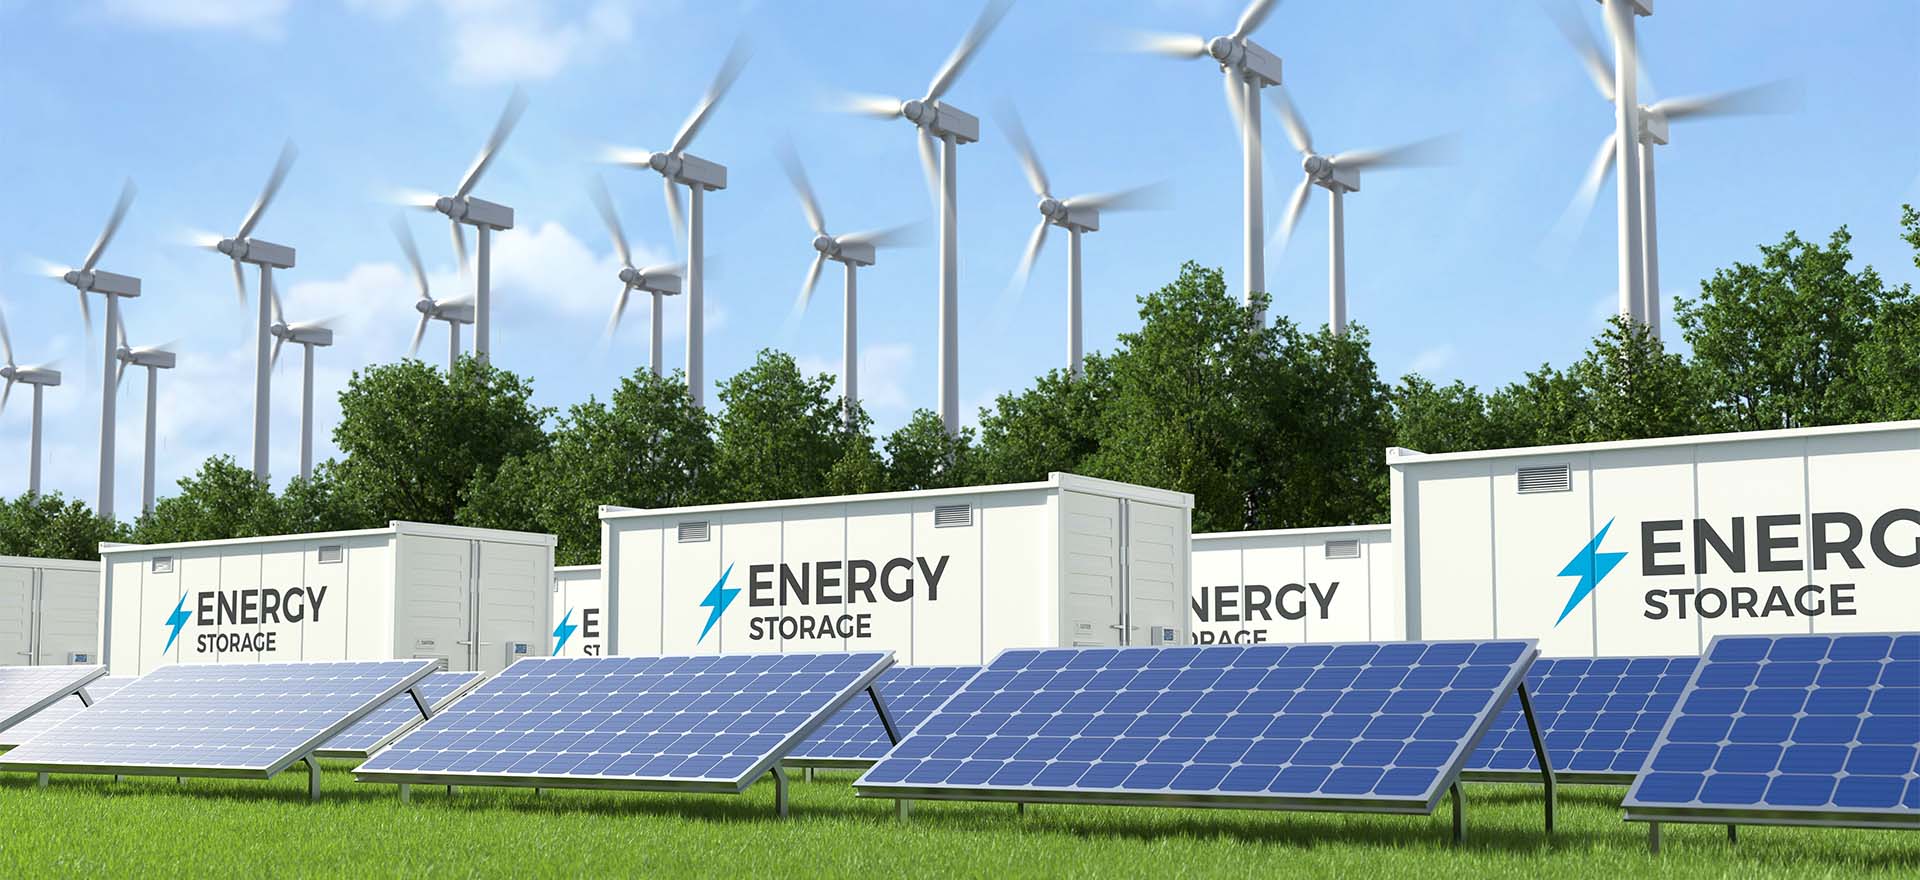 Green Energy, Sustainable Energy and Renewable energy